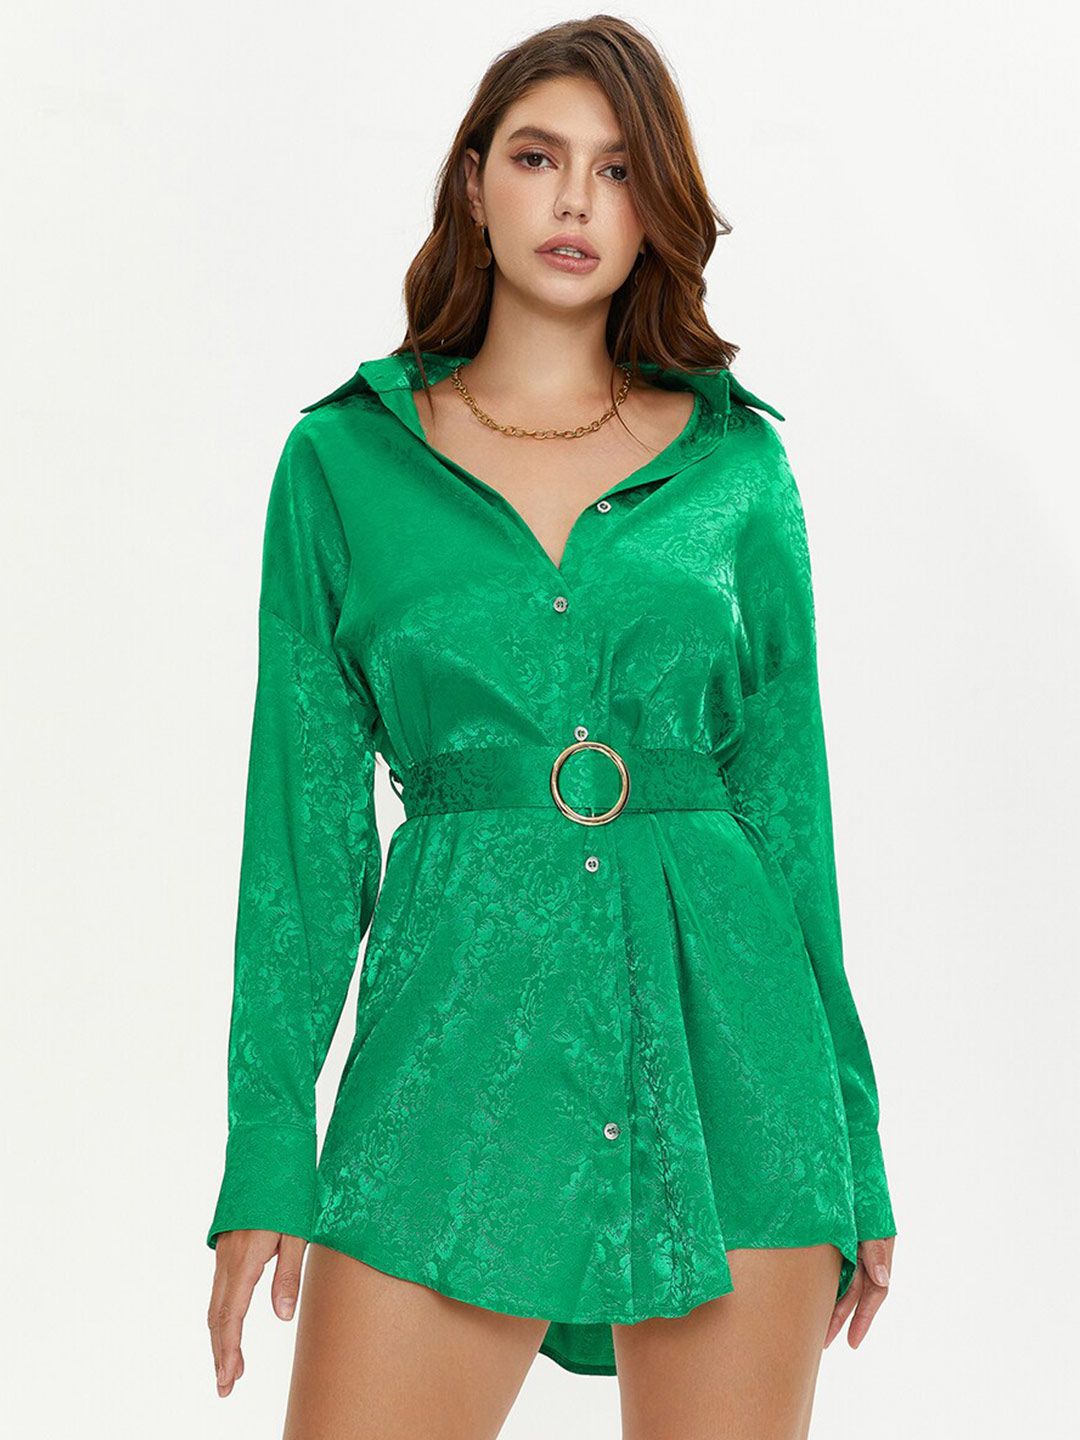 URBANIC Green Shirt Dress Price in India